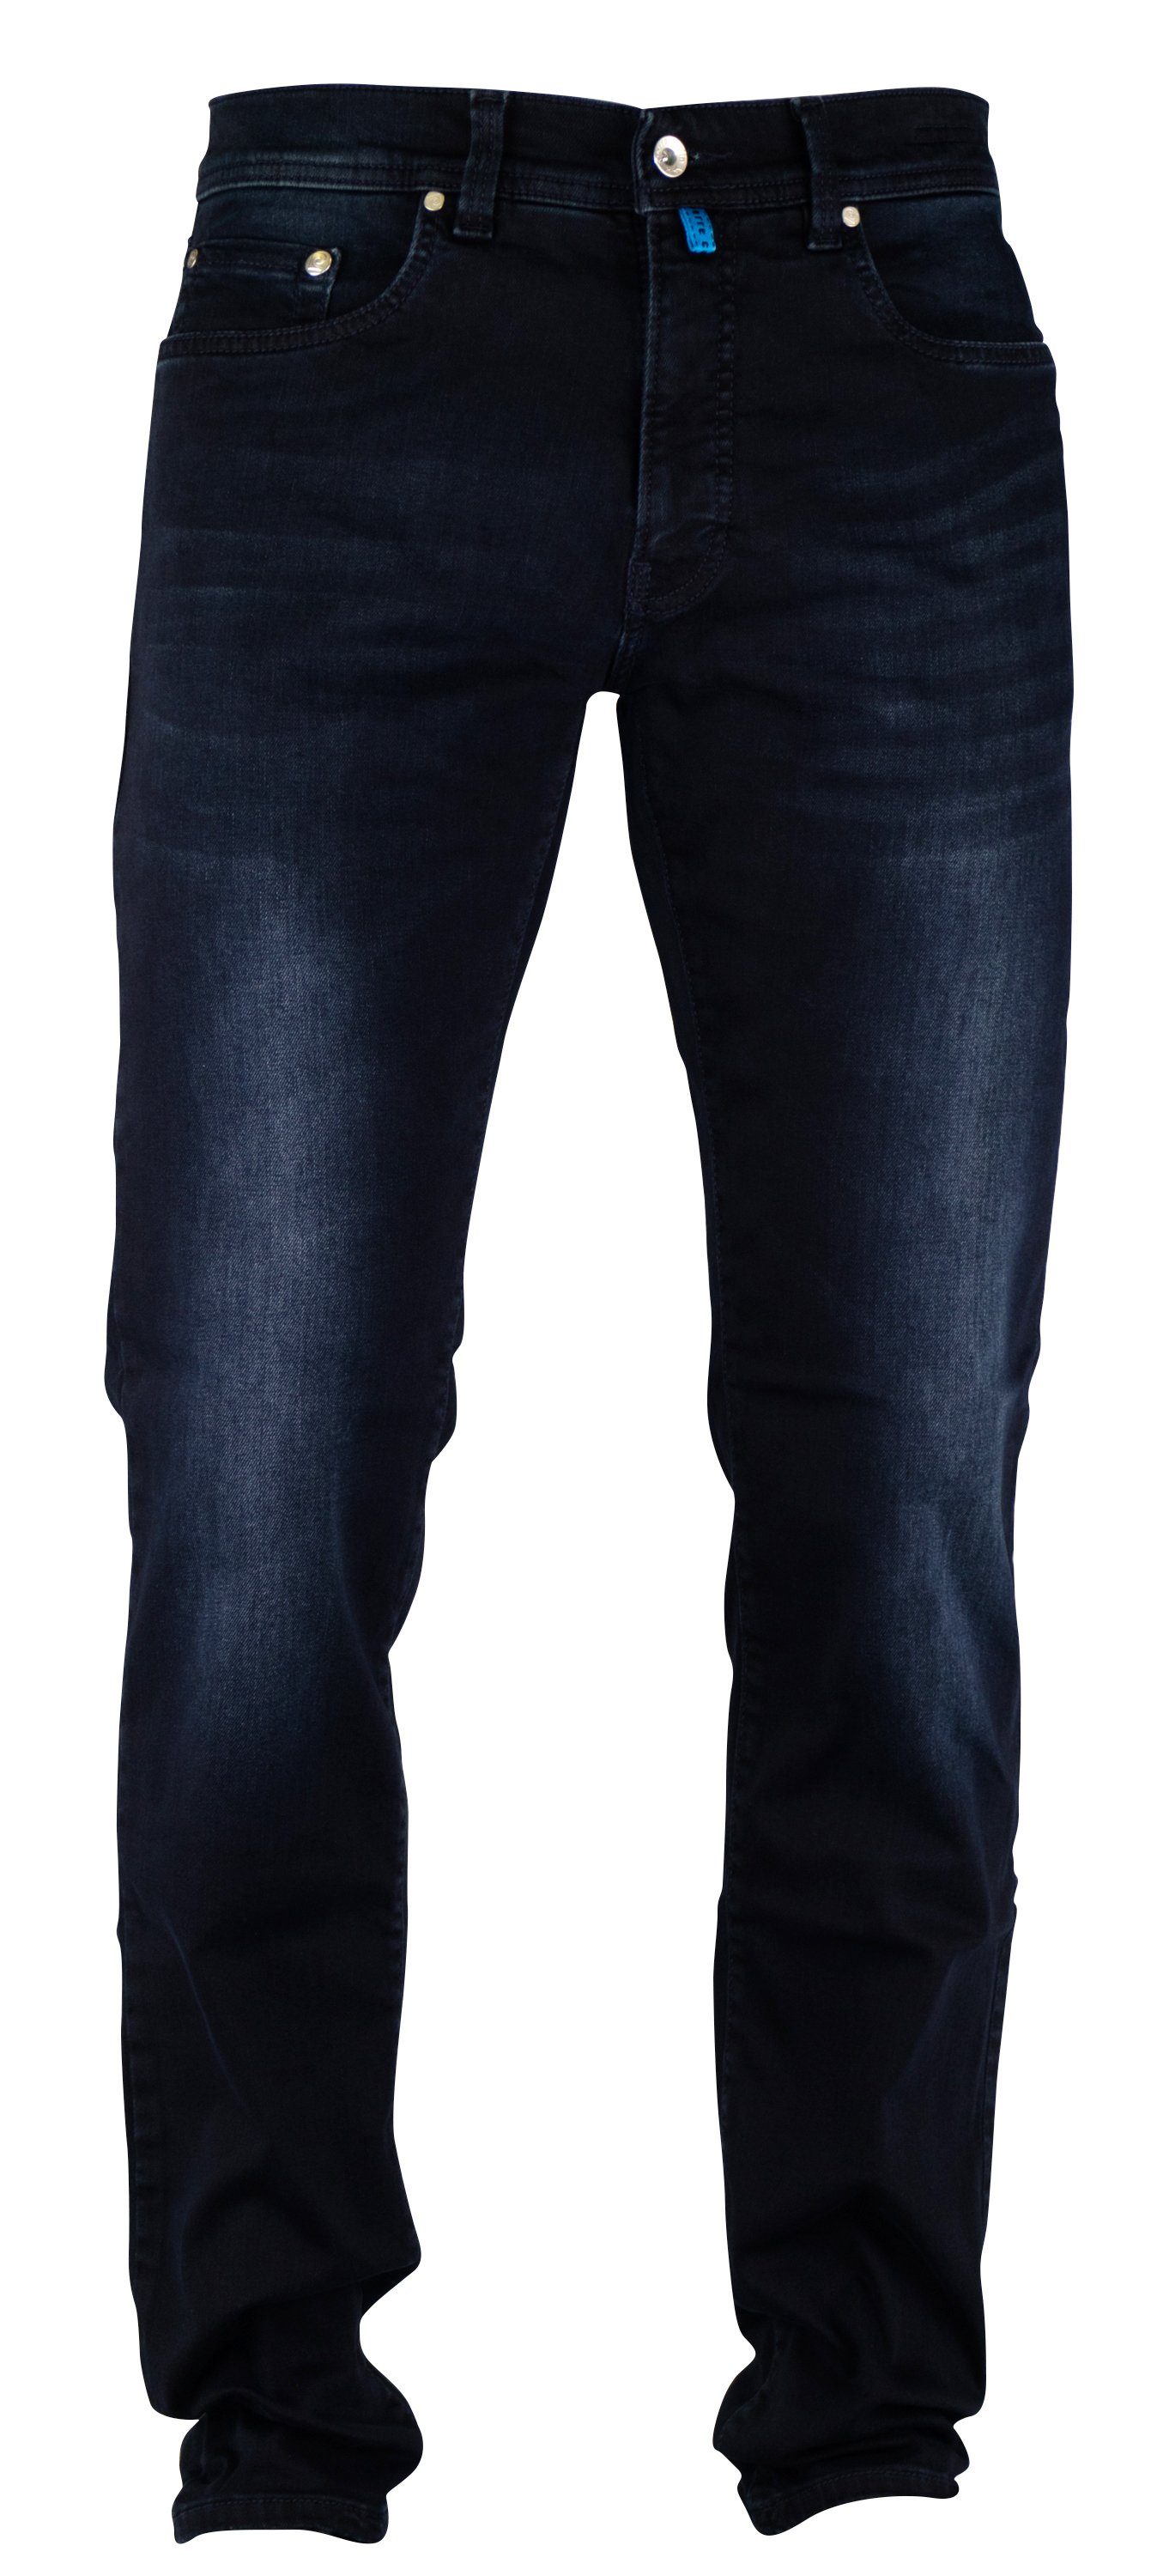 Pierre Cardin 5-Pocket-Jeans PIERRE CARDIN FUTUREFLEX LYON dark sun vintage blue used washed 3451